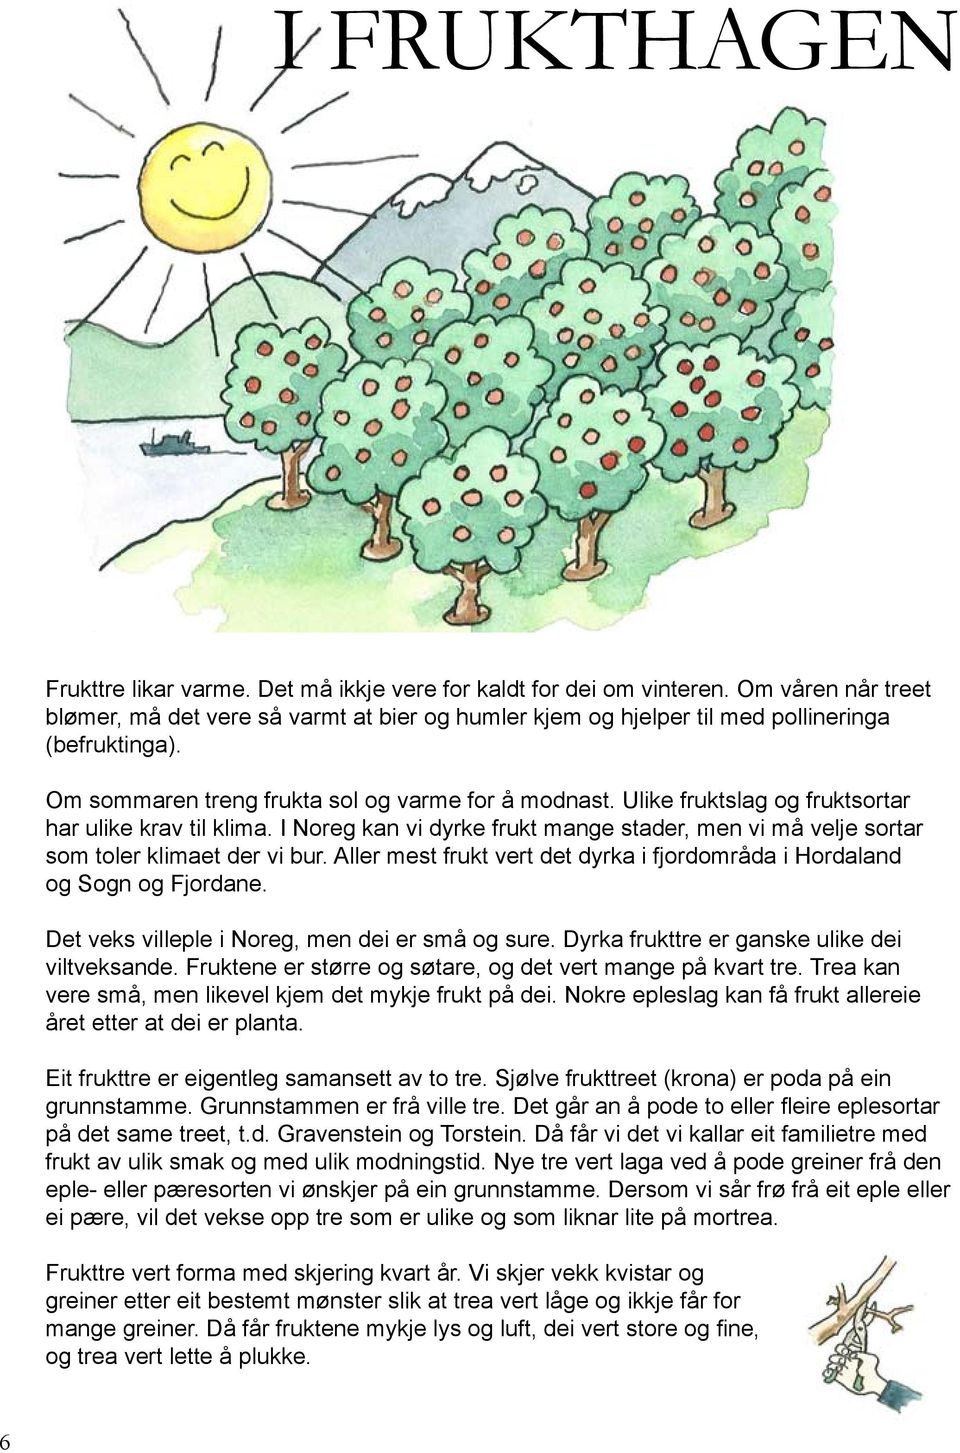 Ulike fruktslag og fruktsortar har ulike krav til klima. I Noreg kan vi dyrke frukt mange stader, men vi må velje sortar som toler klimaet der vi bur.